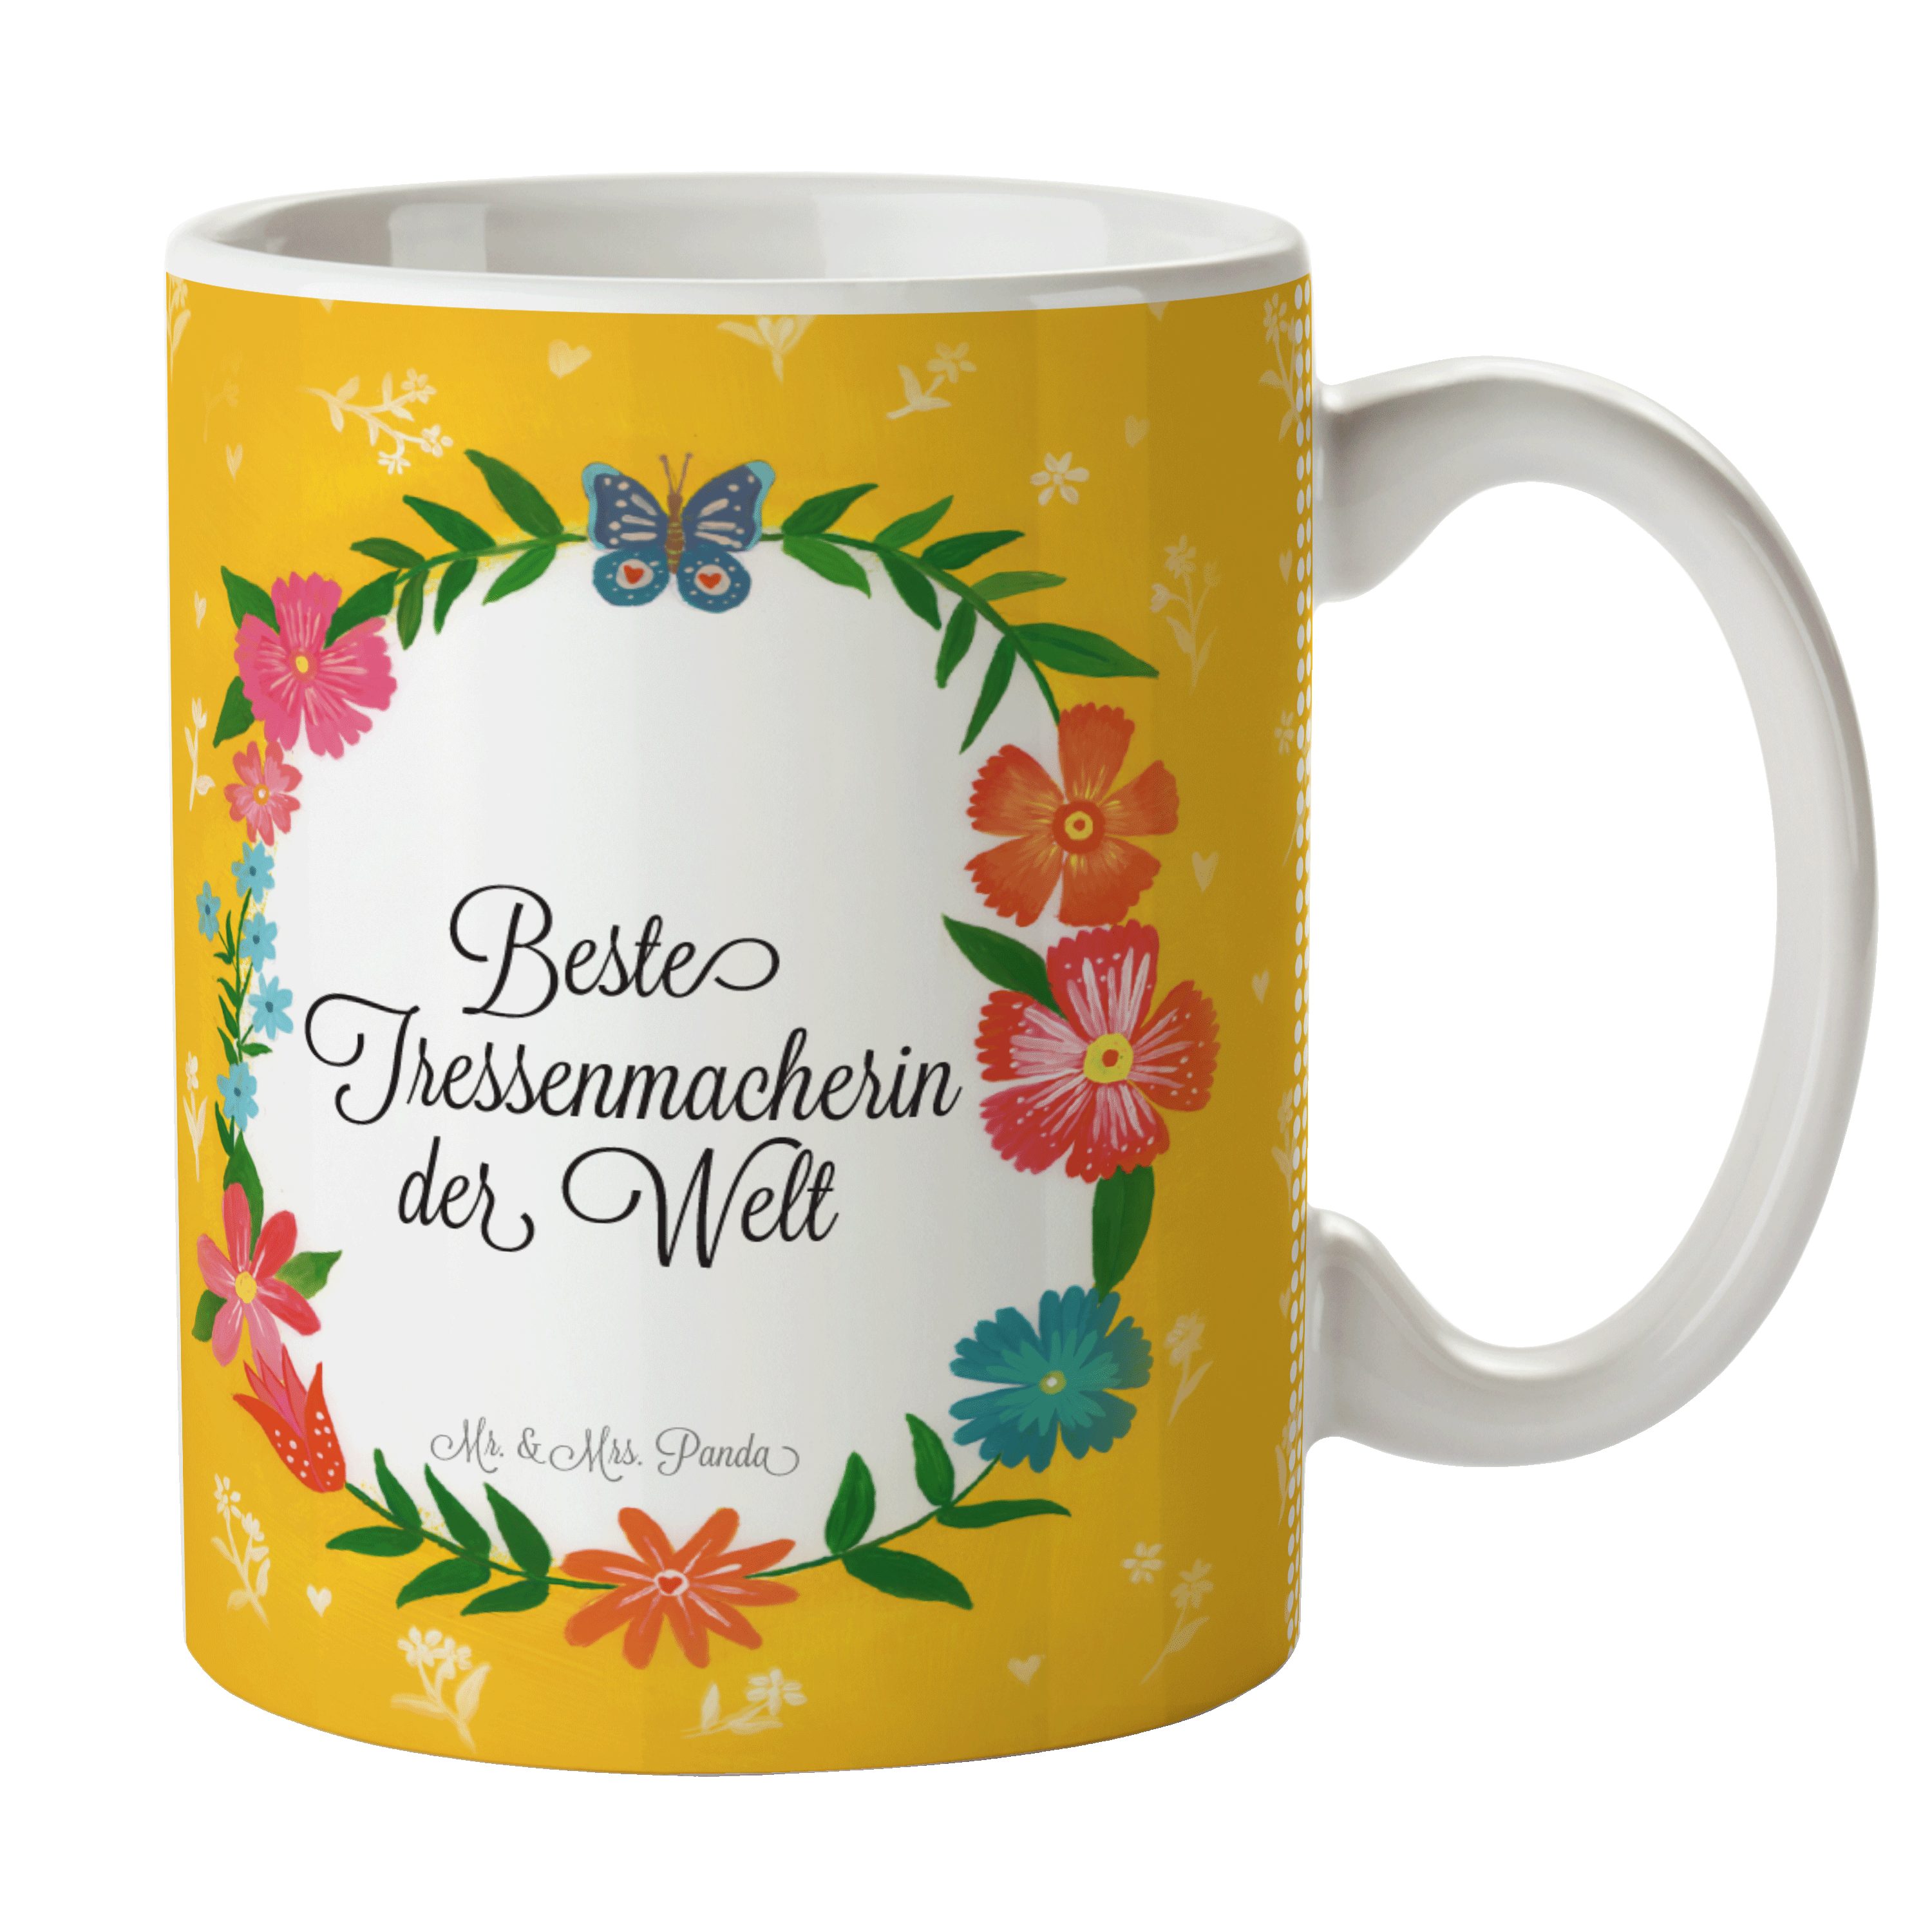 & Schenken, Mr. Tasse Kaffeetasse, Tass, Geschenk, Kaffeebecher, Mrs. Tressenmacherin Panda Keramik -